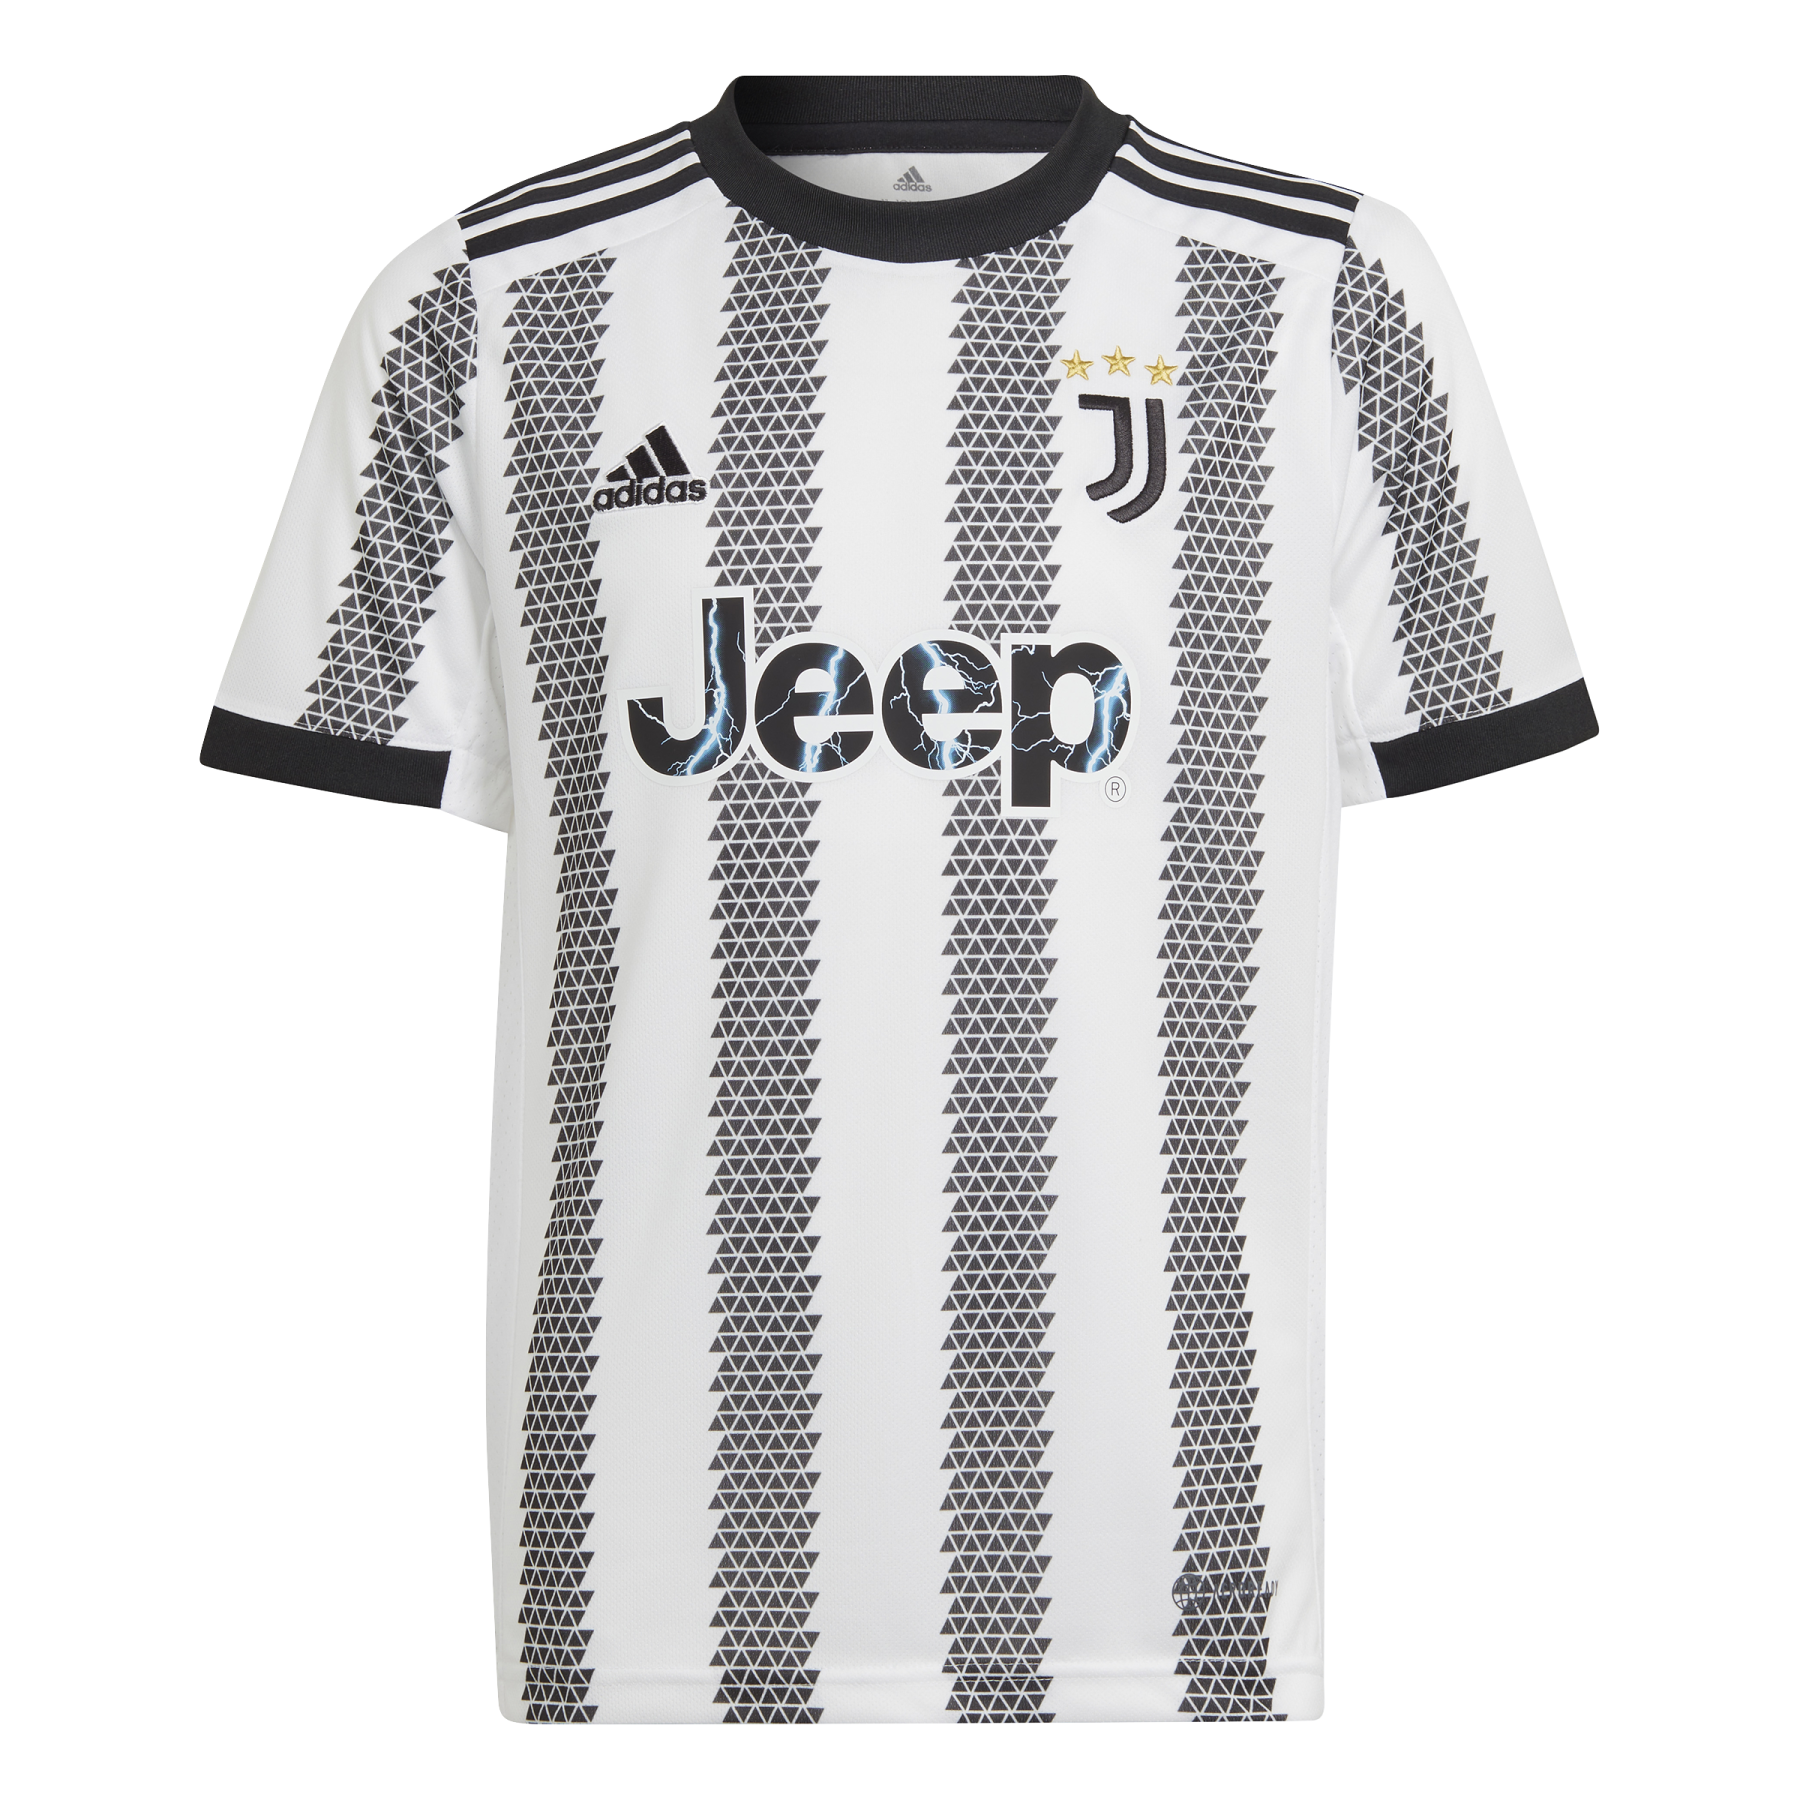 Hemmasittande tröja för barn Juventus Turin 2022/23